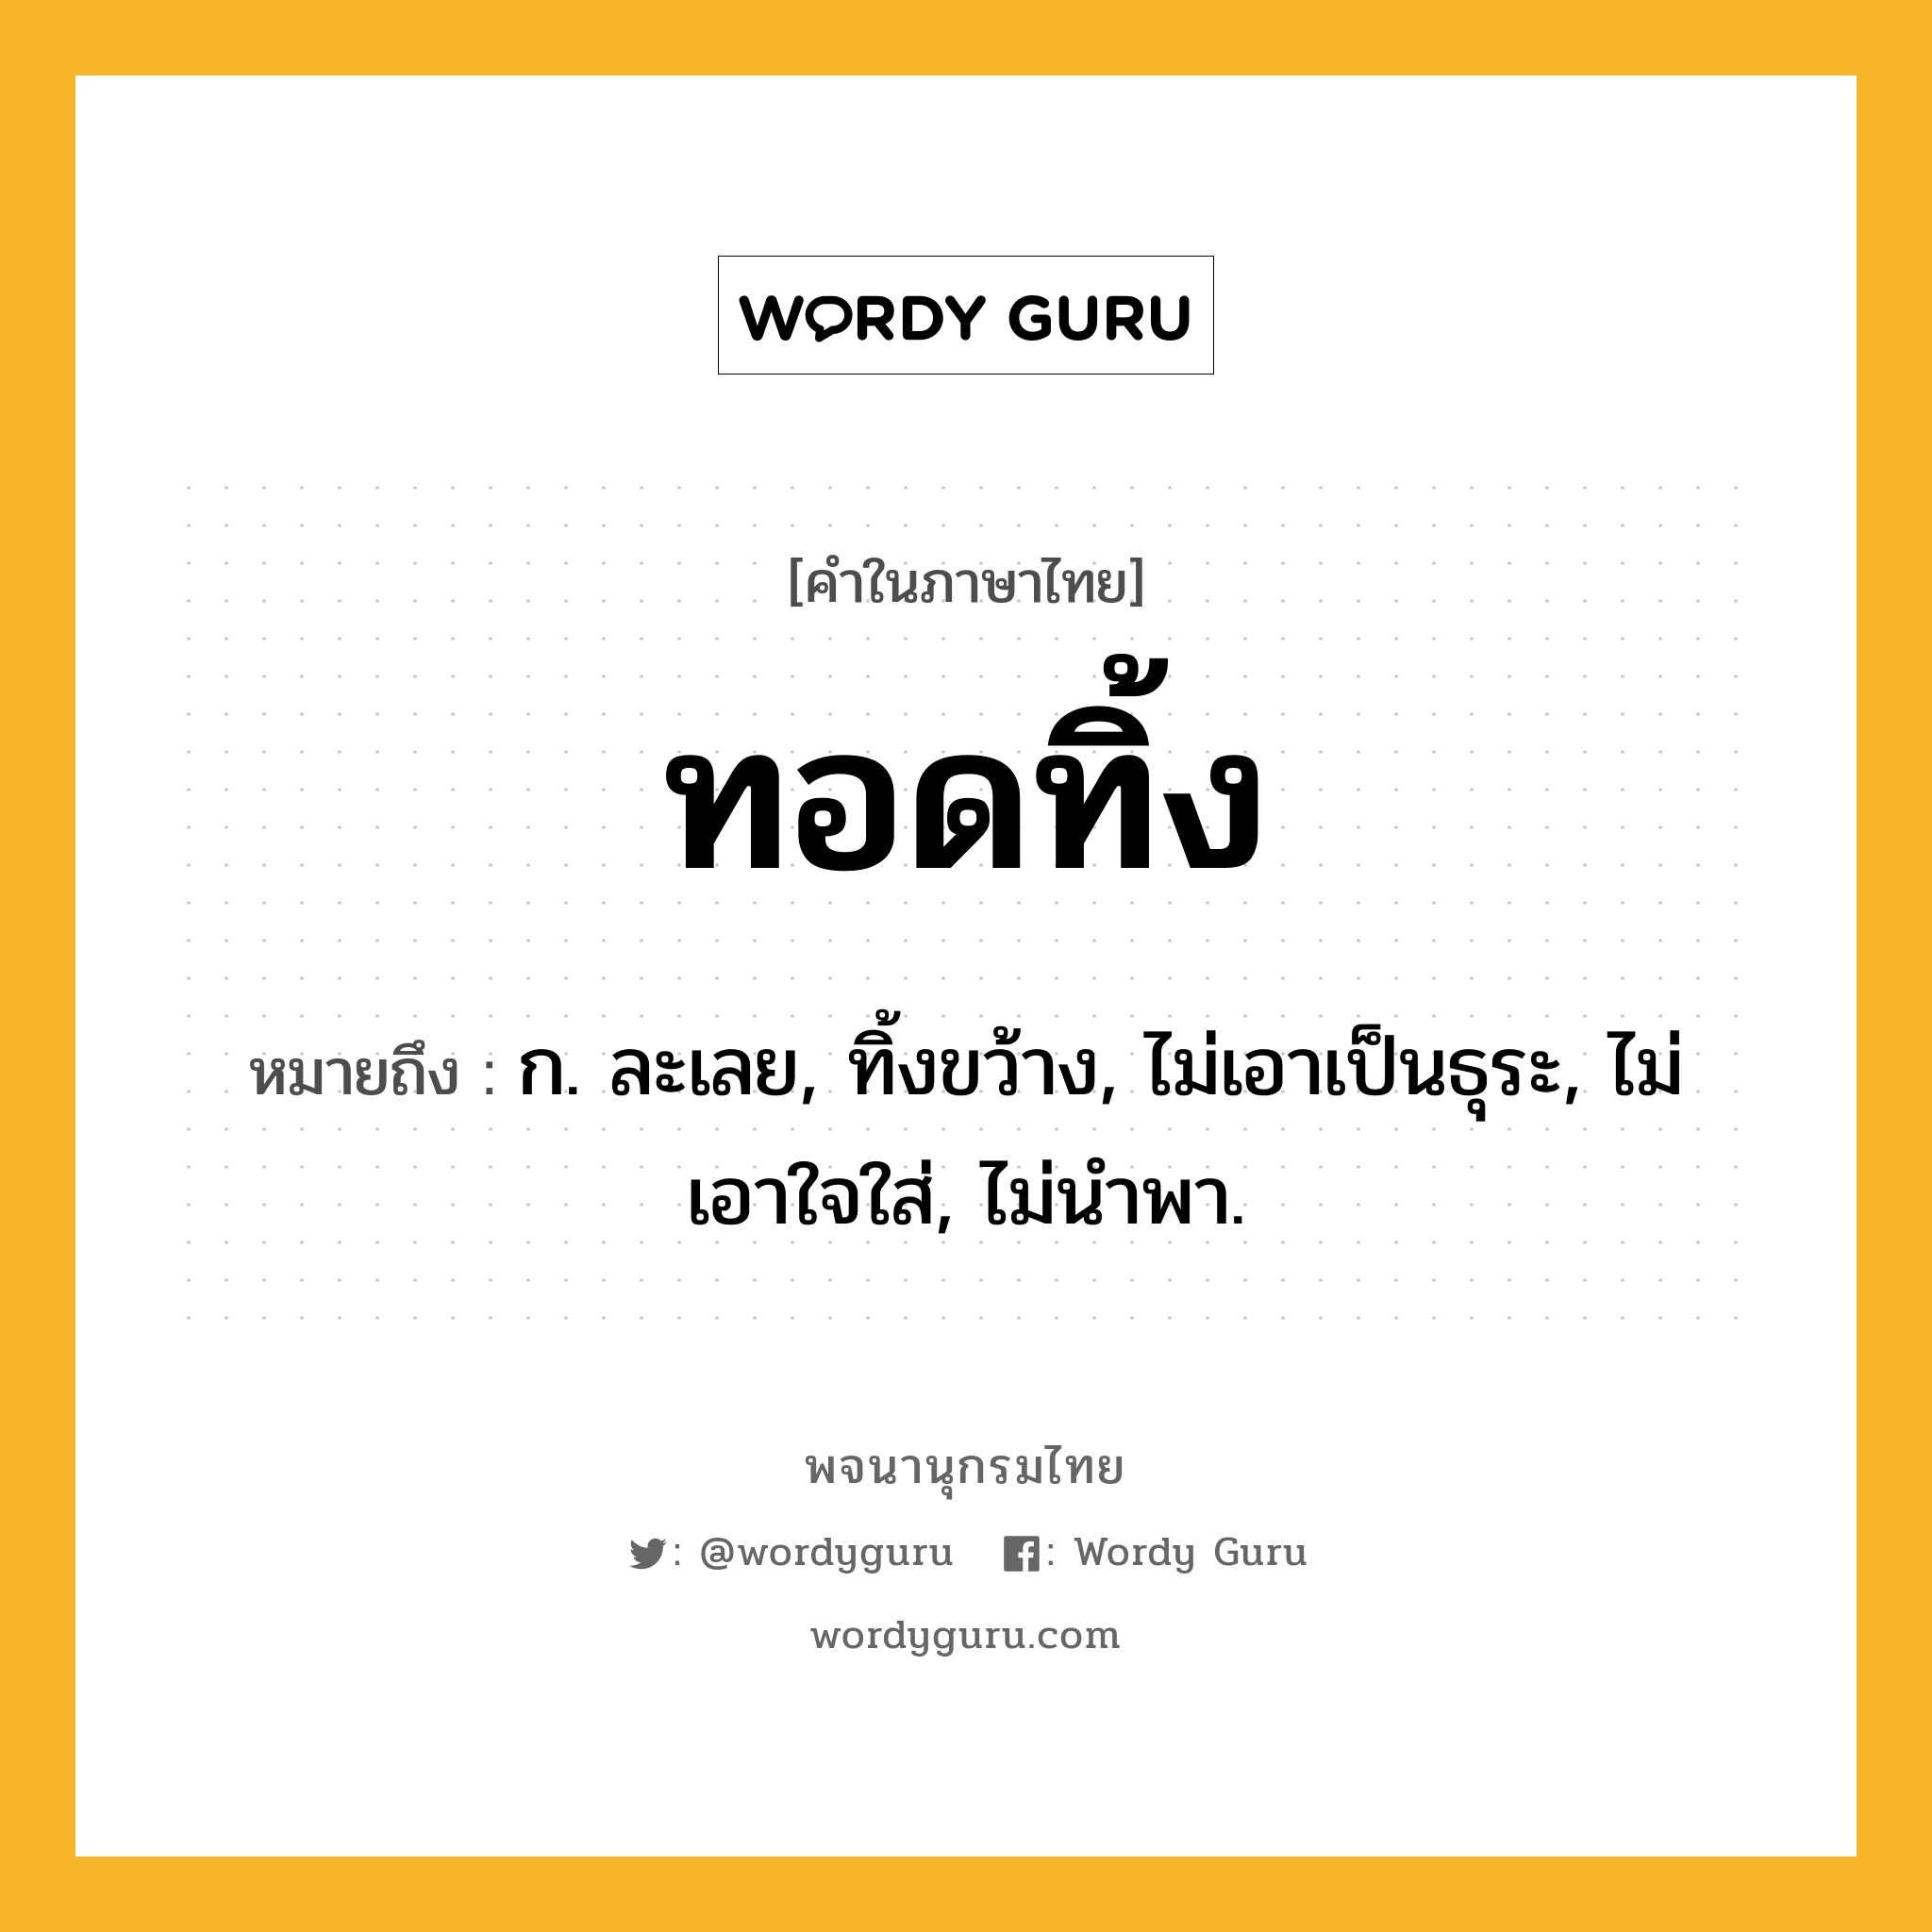 ทอดทิ้ง หมายถึงอะไร?, คำในภาษาไทย ทอดทิ้ง หมายถึง ก. ละเลย, ทิ้งขว้าง, ไม่เอาเป็นธุระ, ไม่เอาใจใส่, ไม่นําพา.